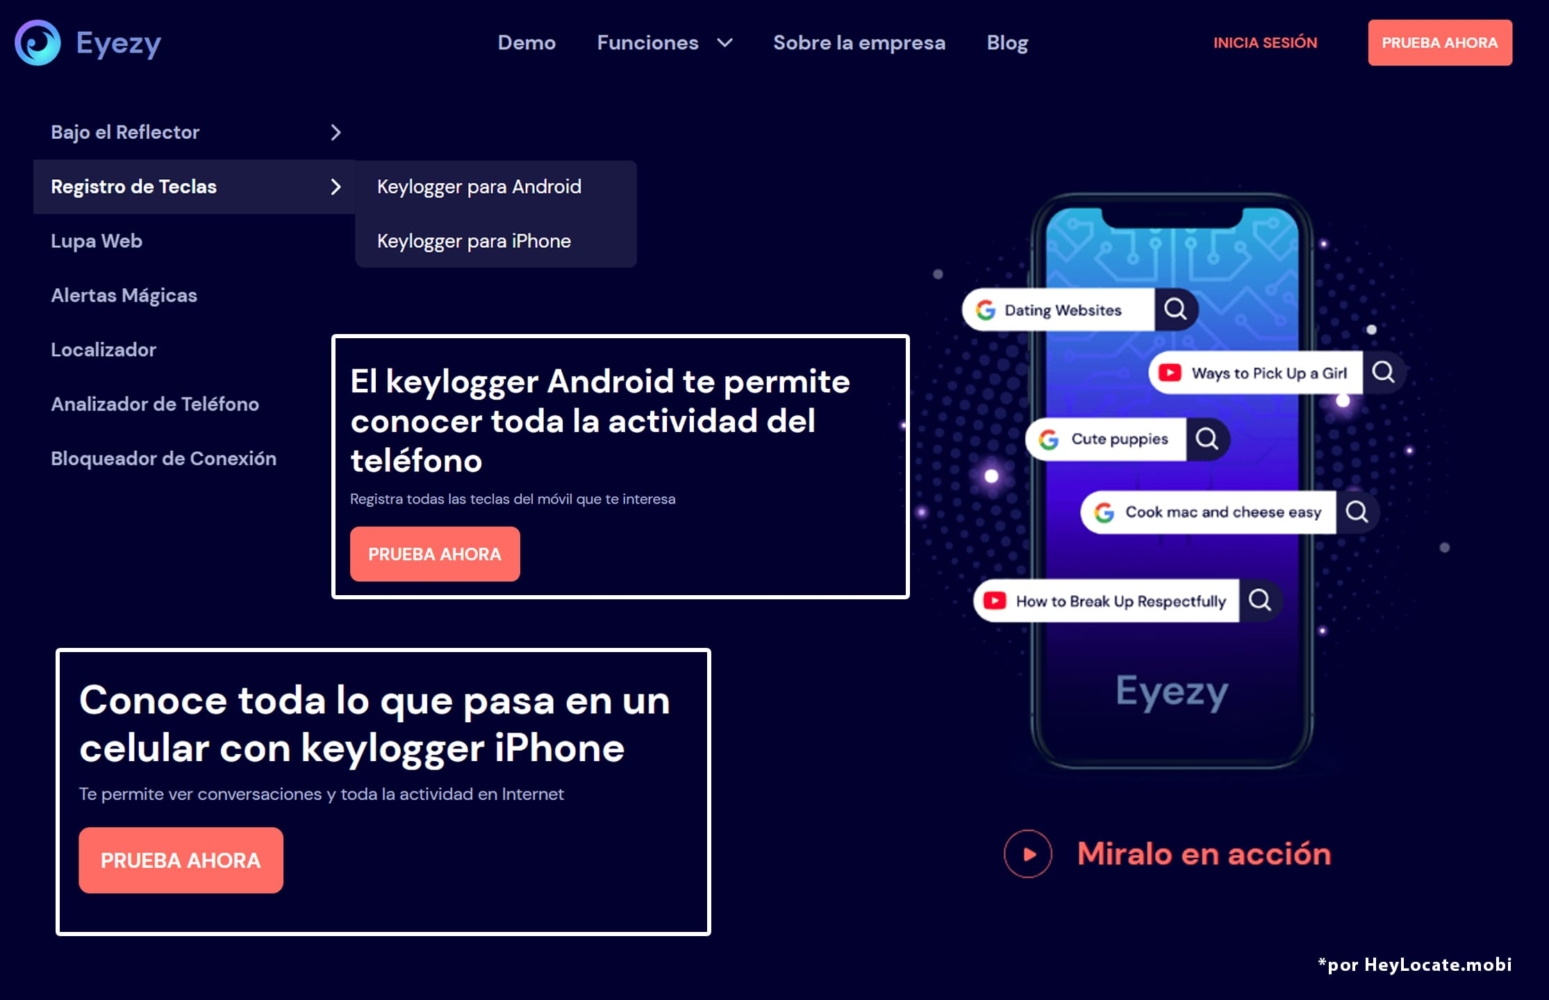 En la interfaz de la aplicación Eyezy hay un collage con información sobre keylogger para Android y iPhone con capturas de pantalla de una breve descripción y el botón Probar ahora